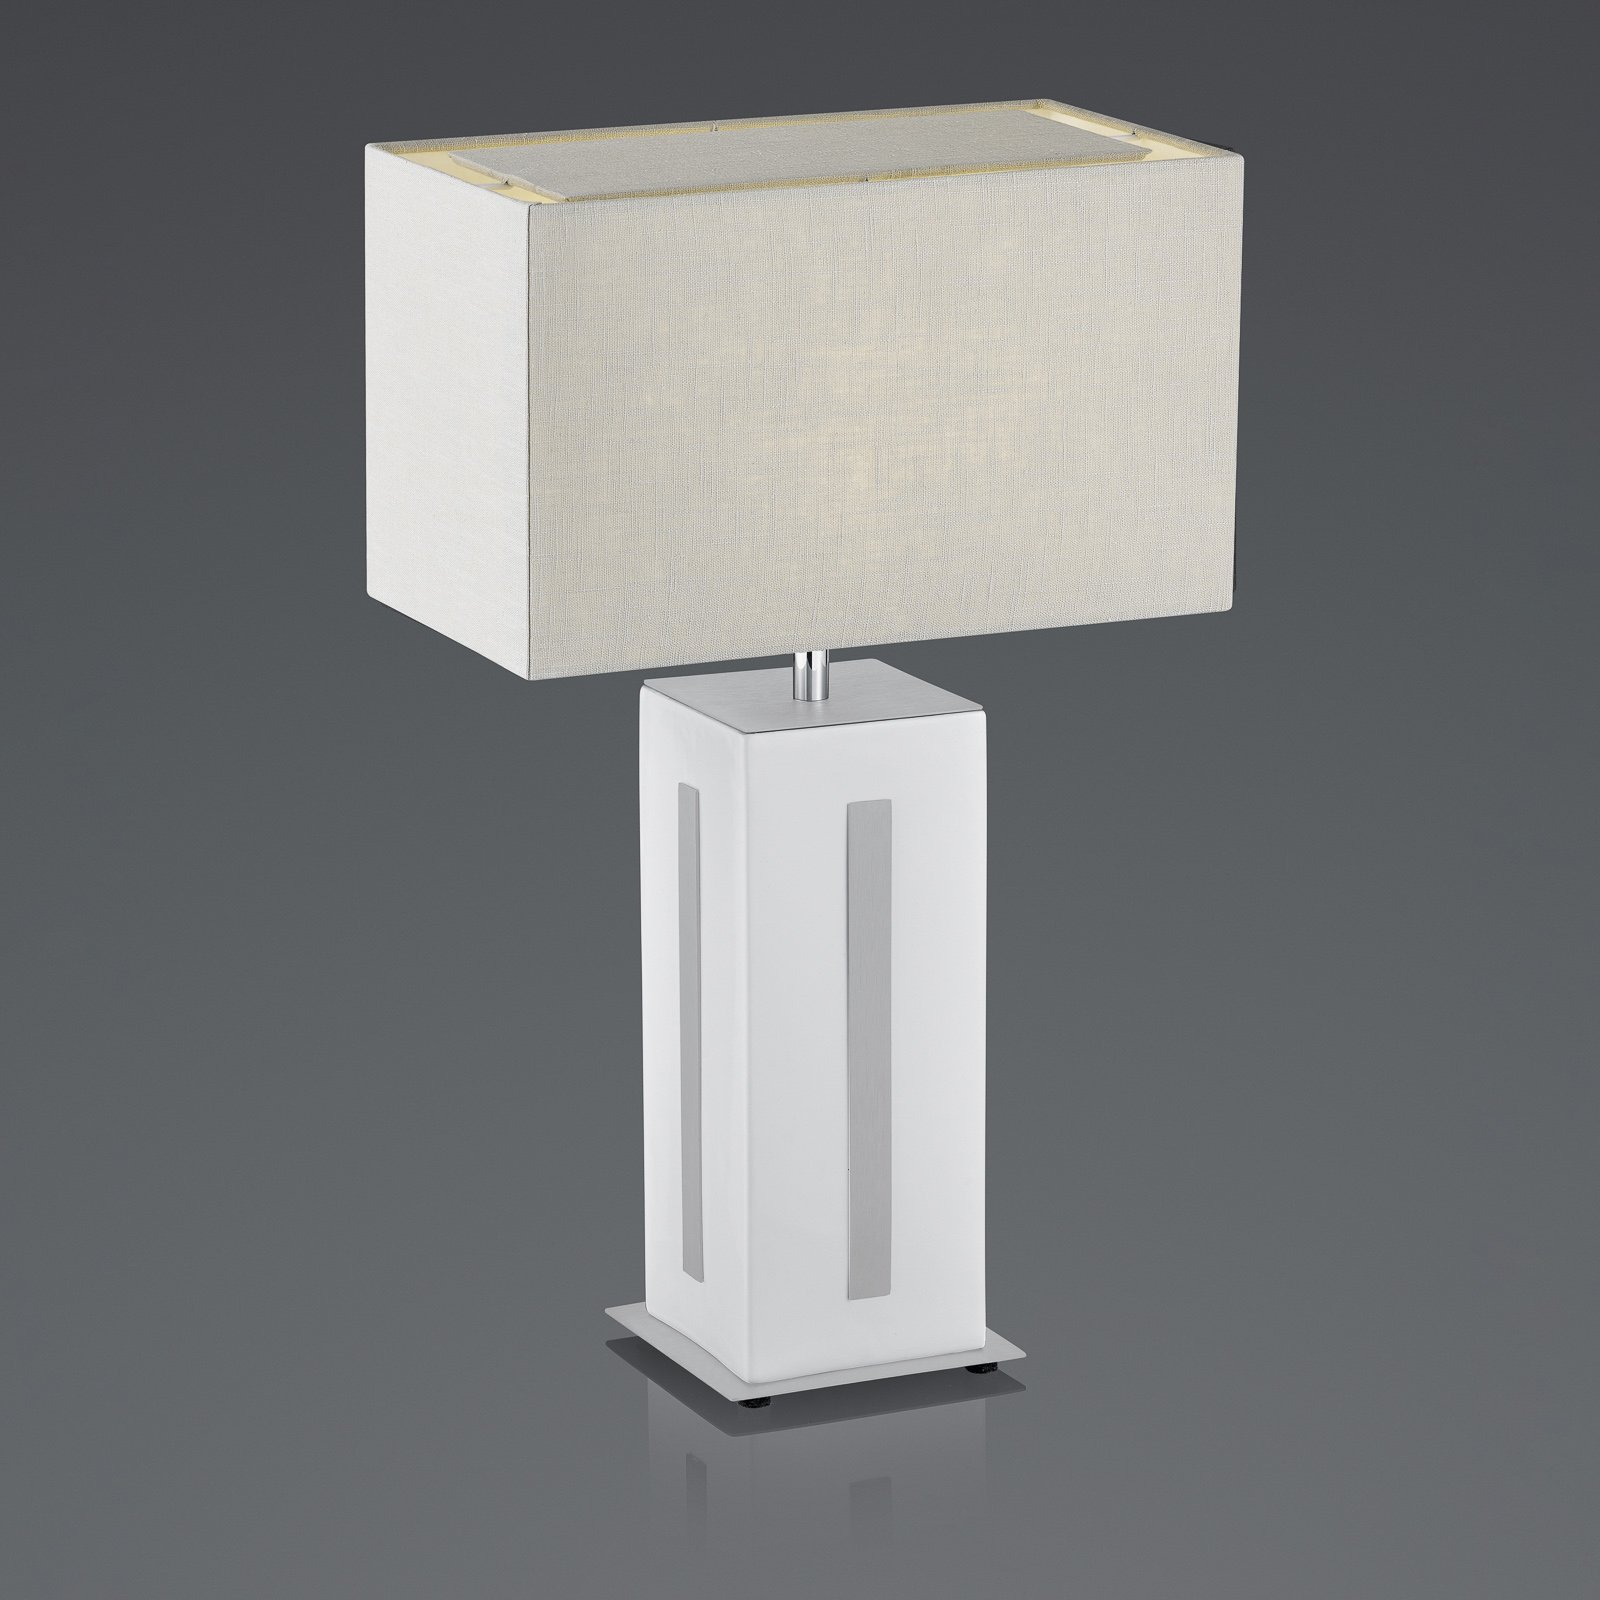 BANKAMP Karlo bordlampe hvit/grå, høyde 56 cm